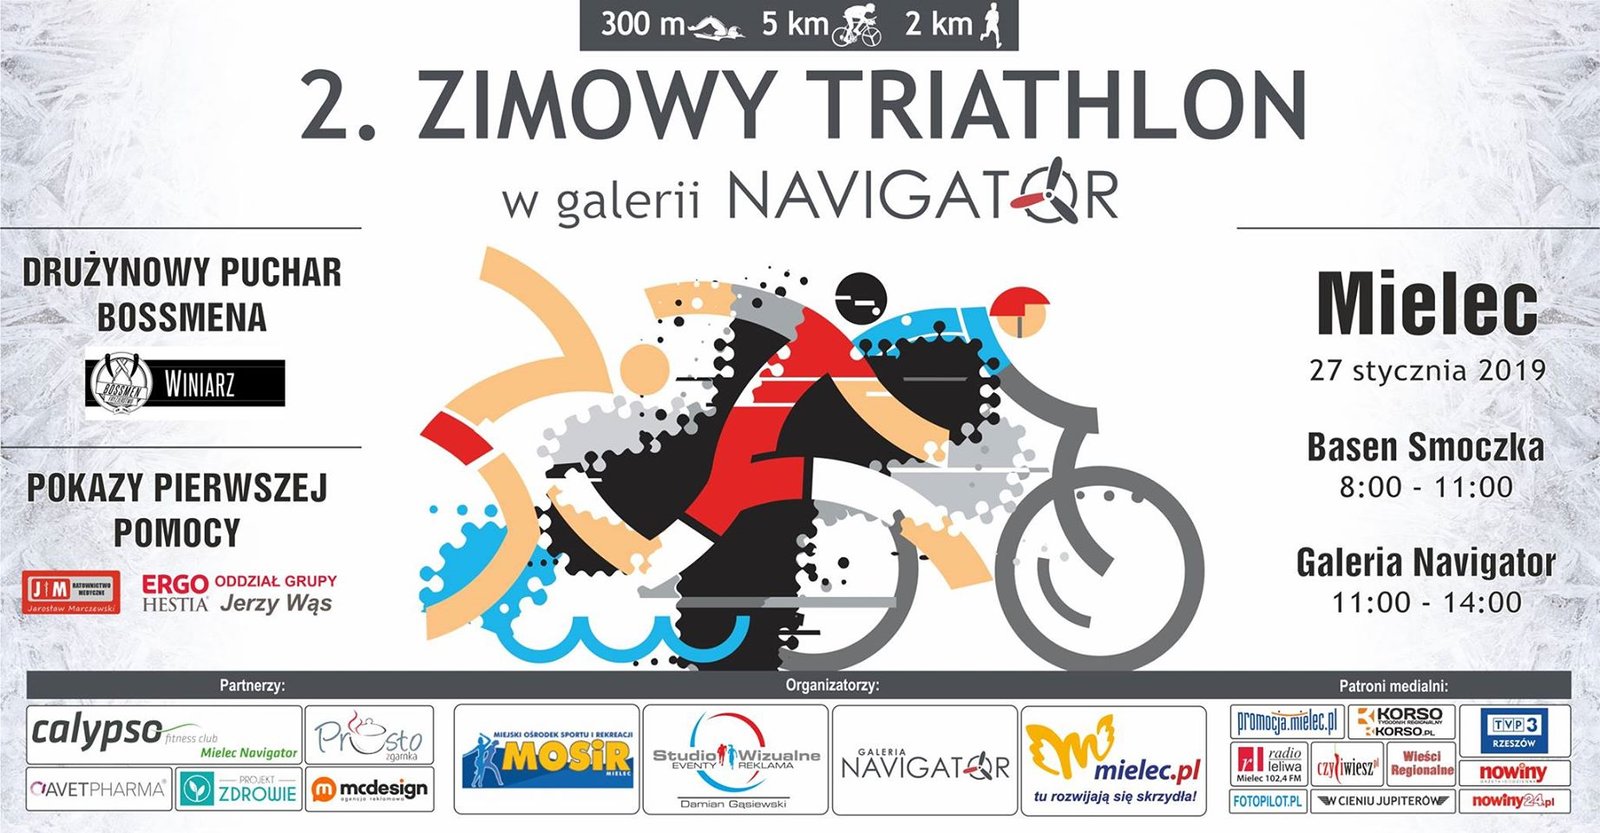 Logo Zawodów Zimowy Triathlon w Galerii Navigator 2019